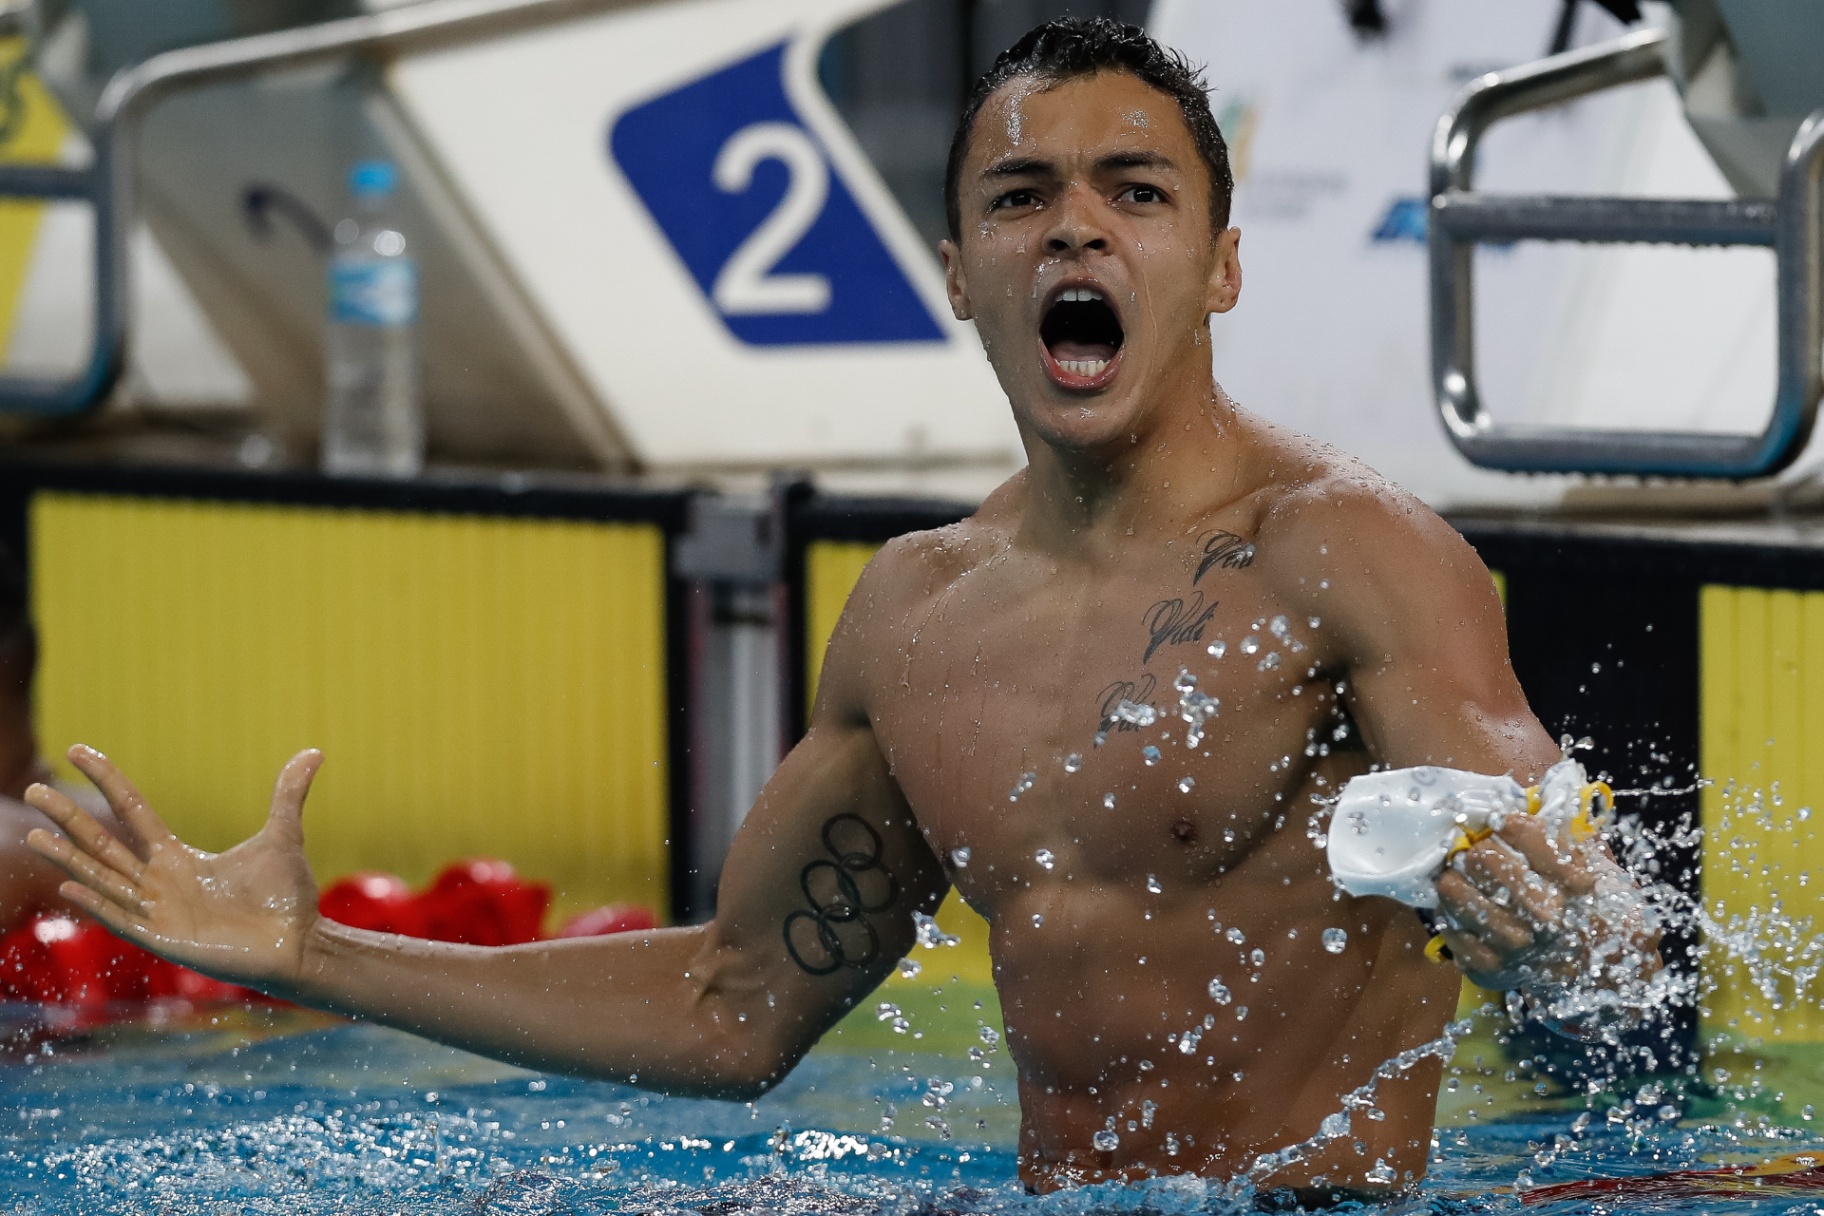 14 brasileiros que foram pegos no exame antidoping e suspensos/banidos do esporte